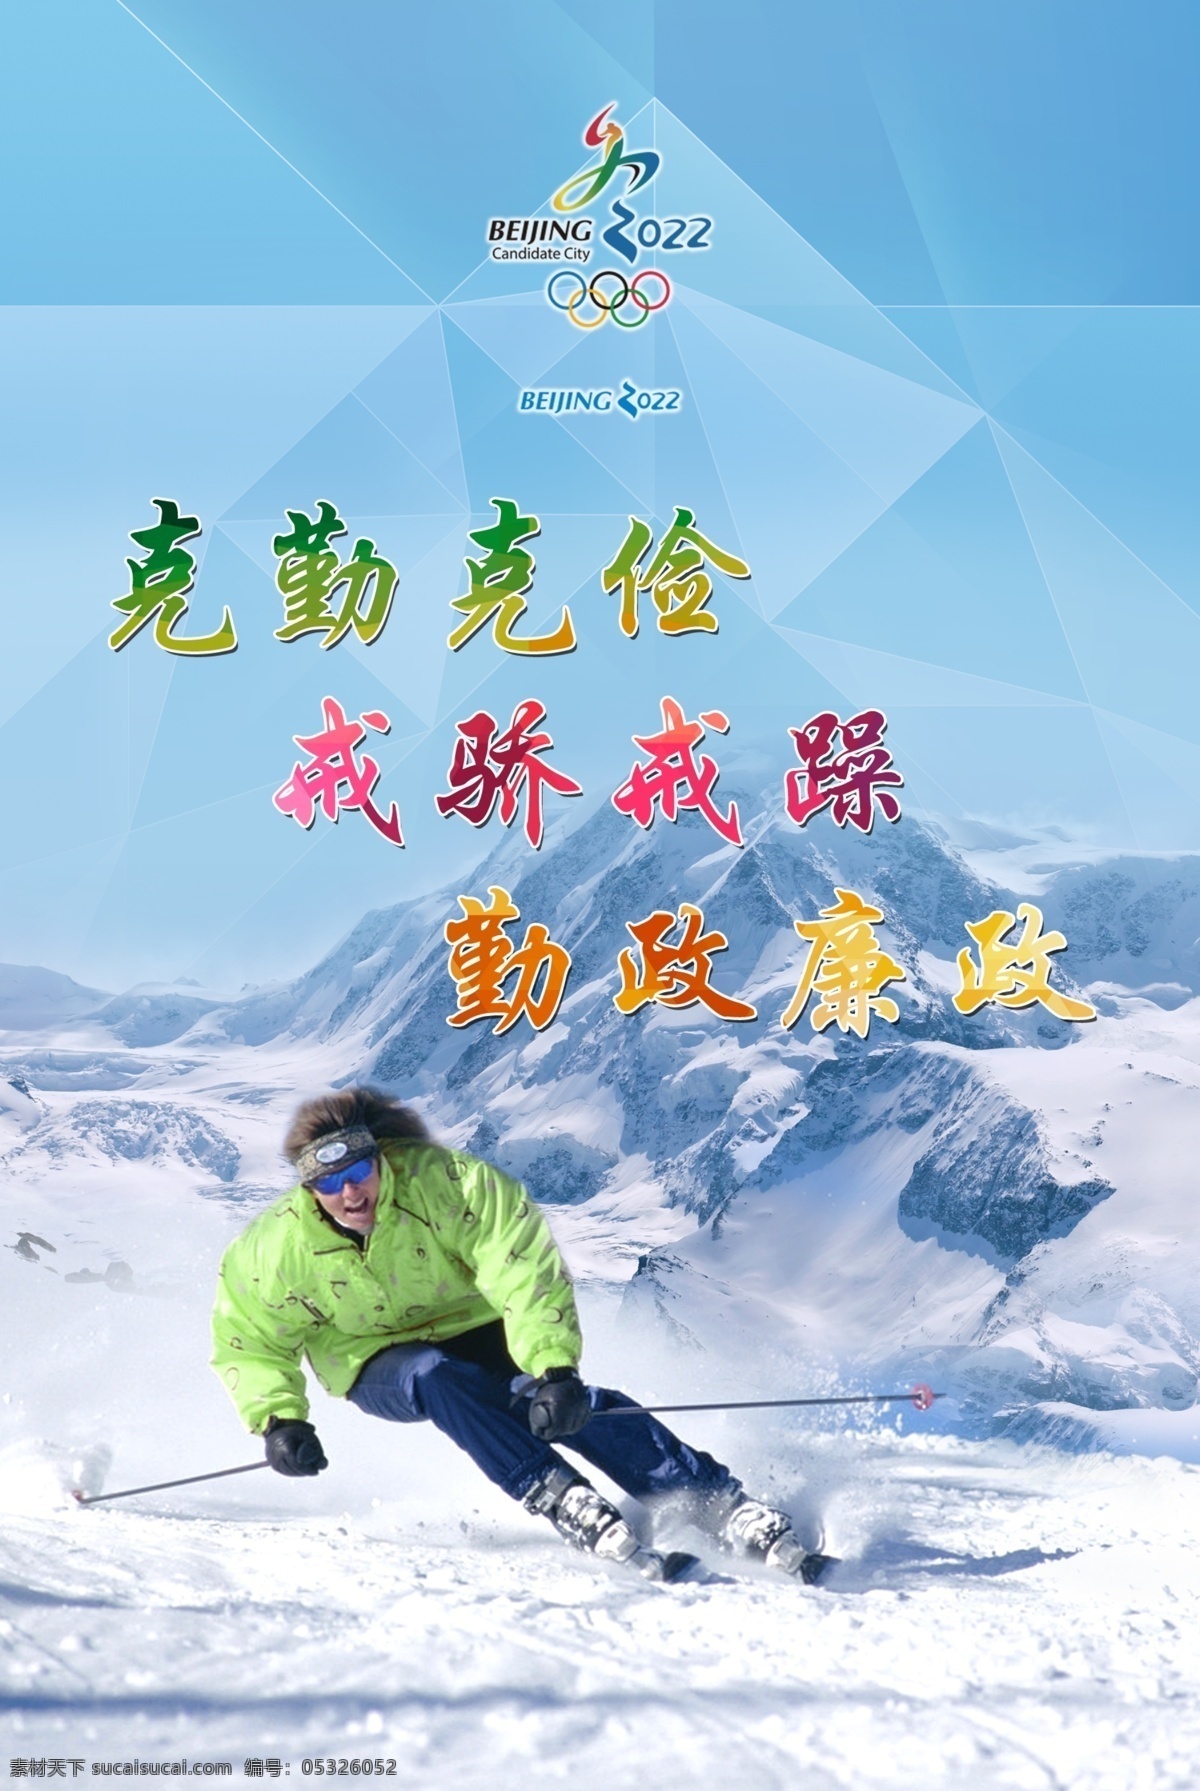 冬奥会 奥运会 冬奥 滑雪 申办冬奥 冬奥成功 展板 政府展板 政府口号 展板设计 展板模板